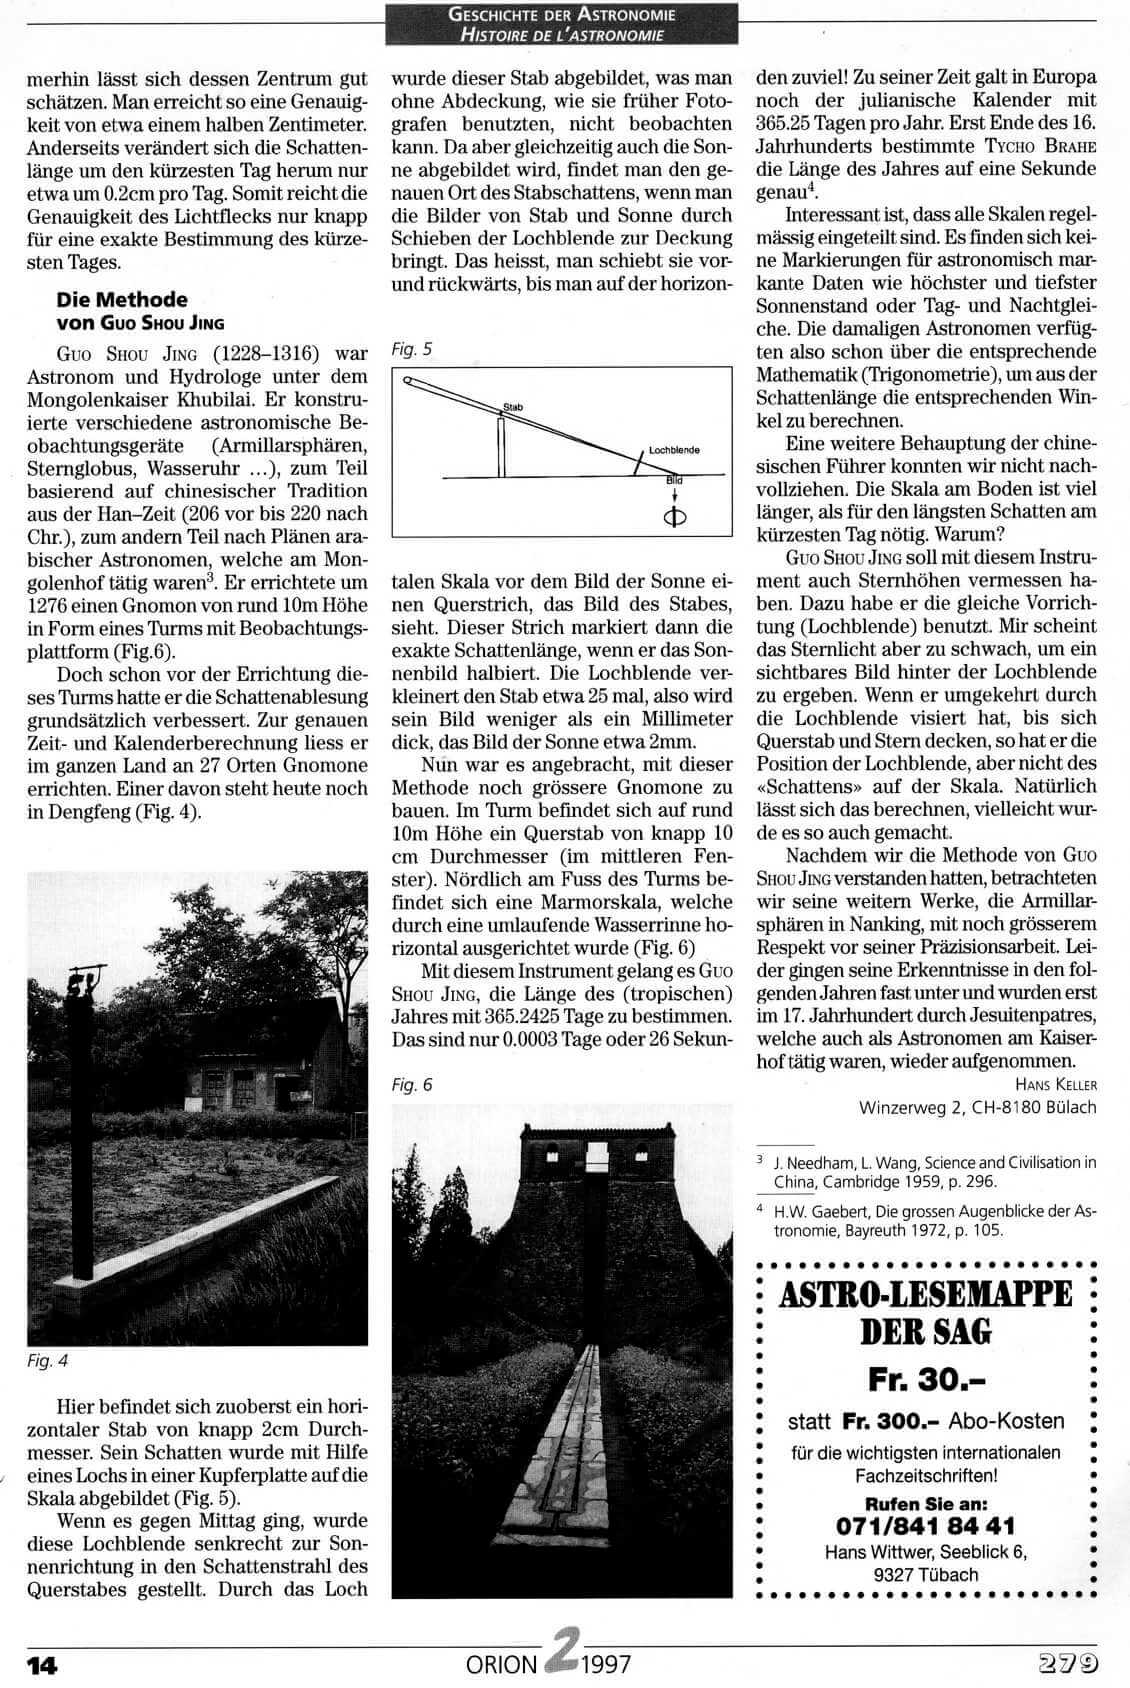 Geschichte der Astronomie Orion 2 1997 Seite 14